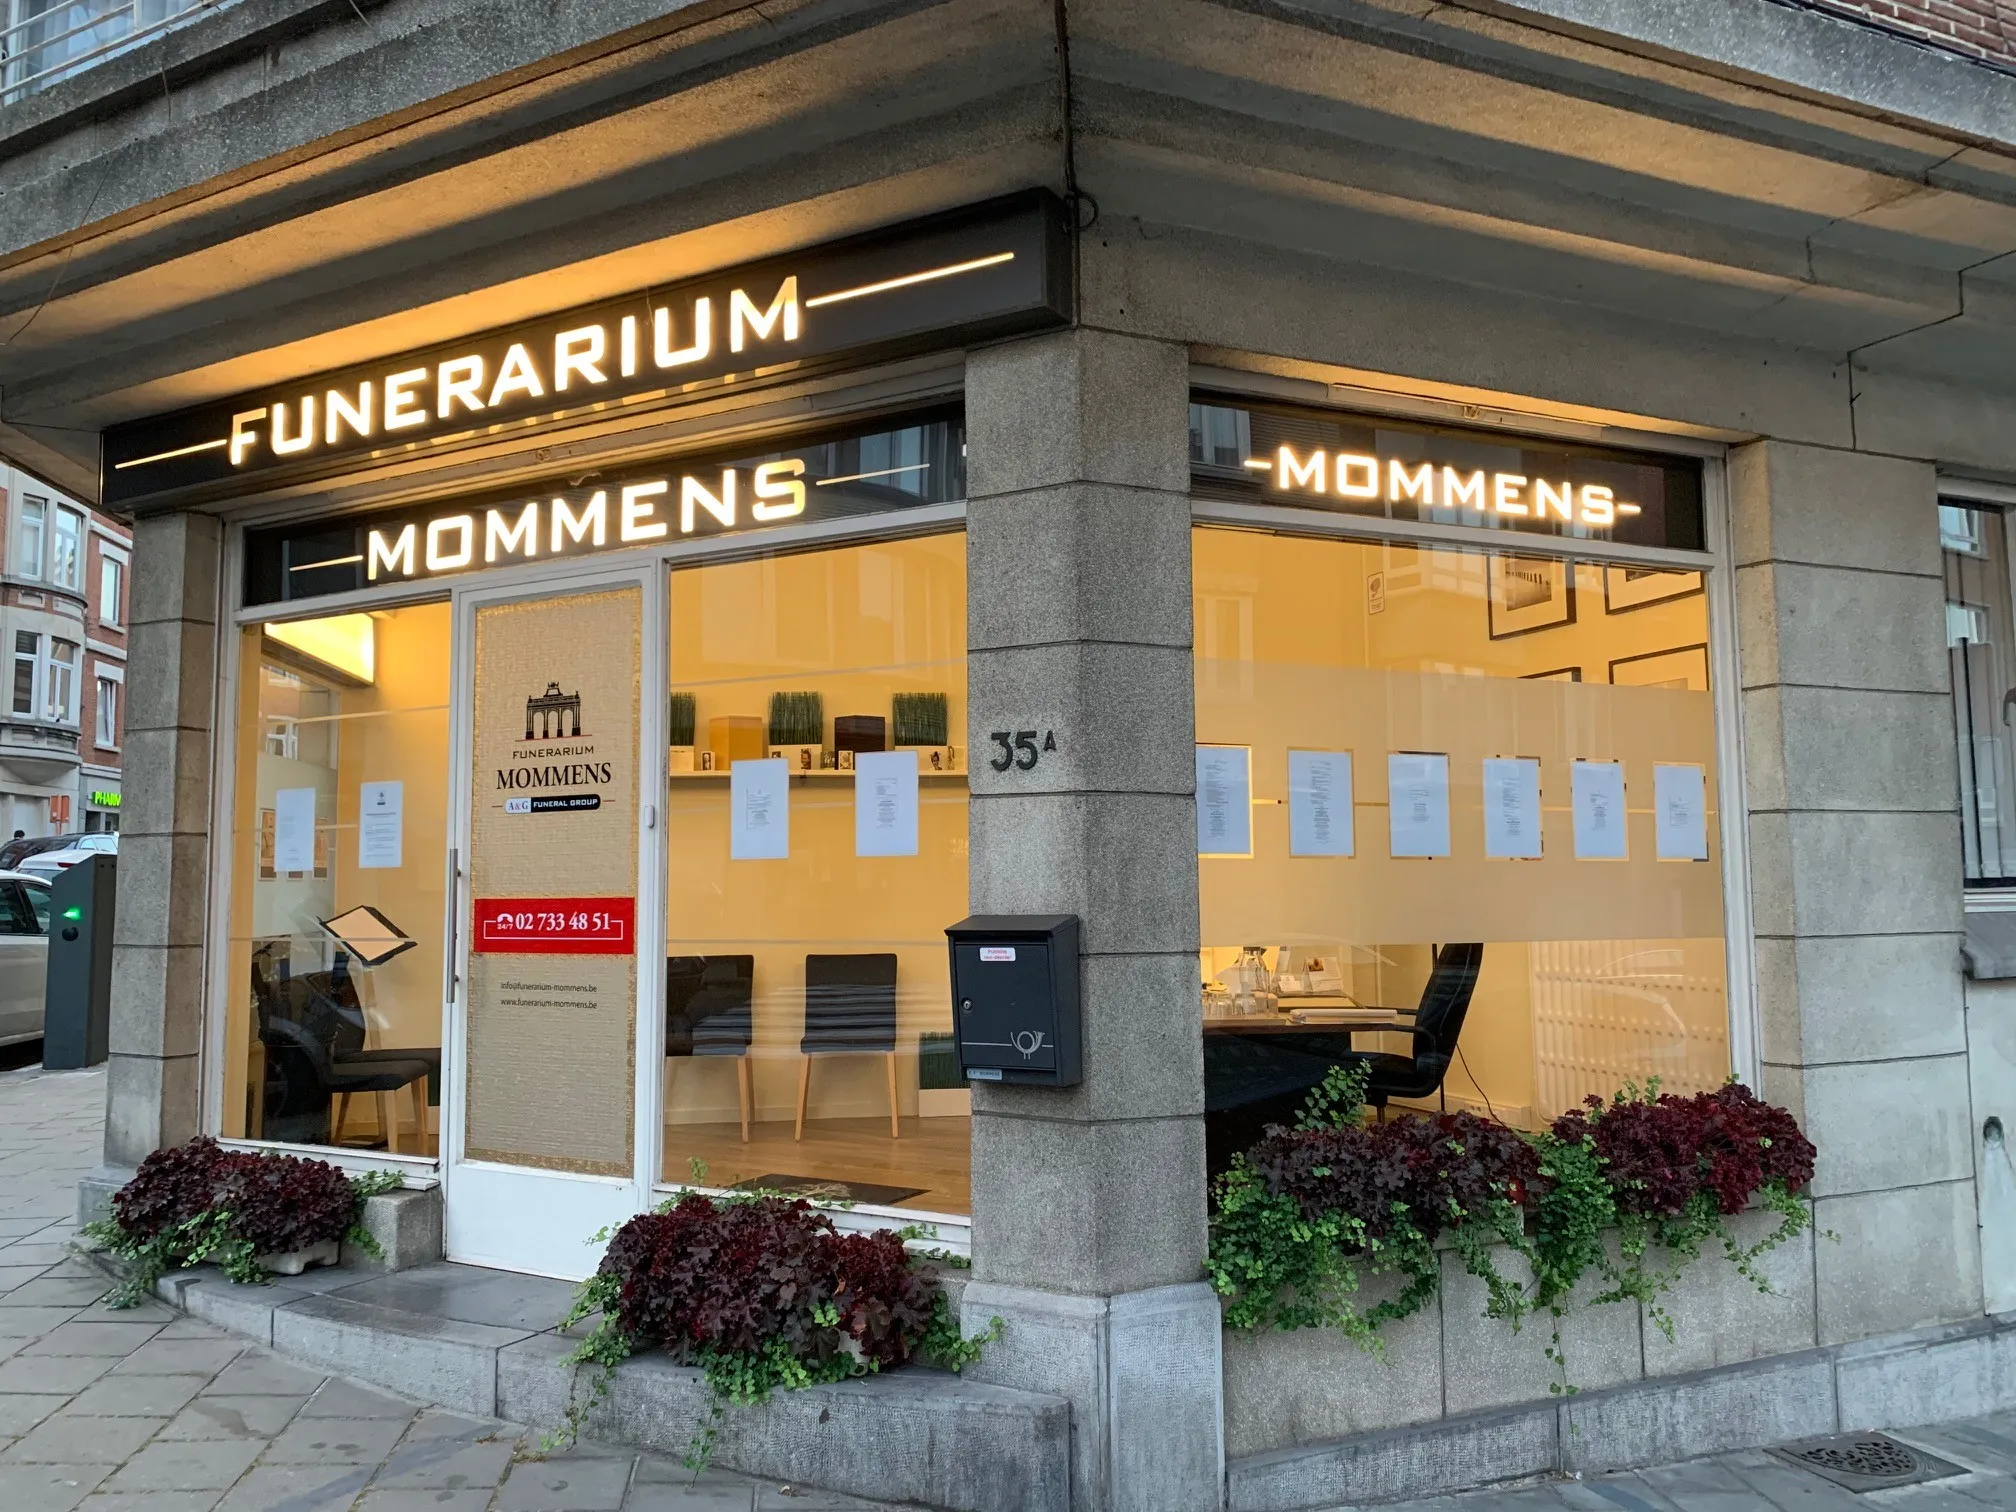 Funerarium Mommens